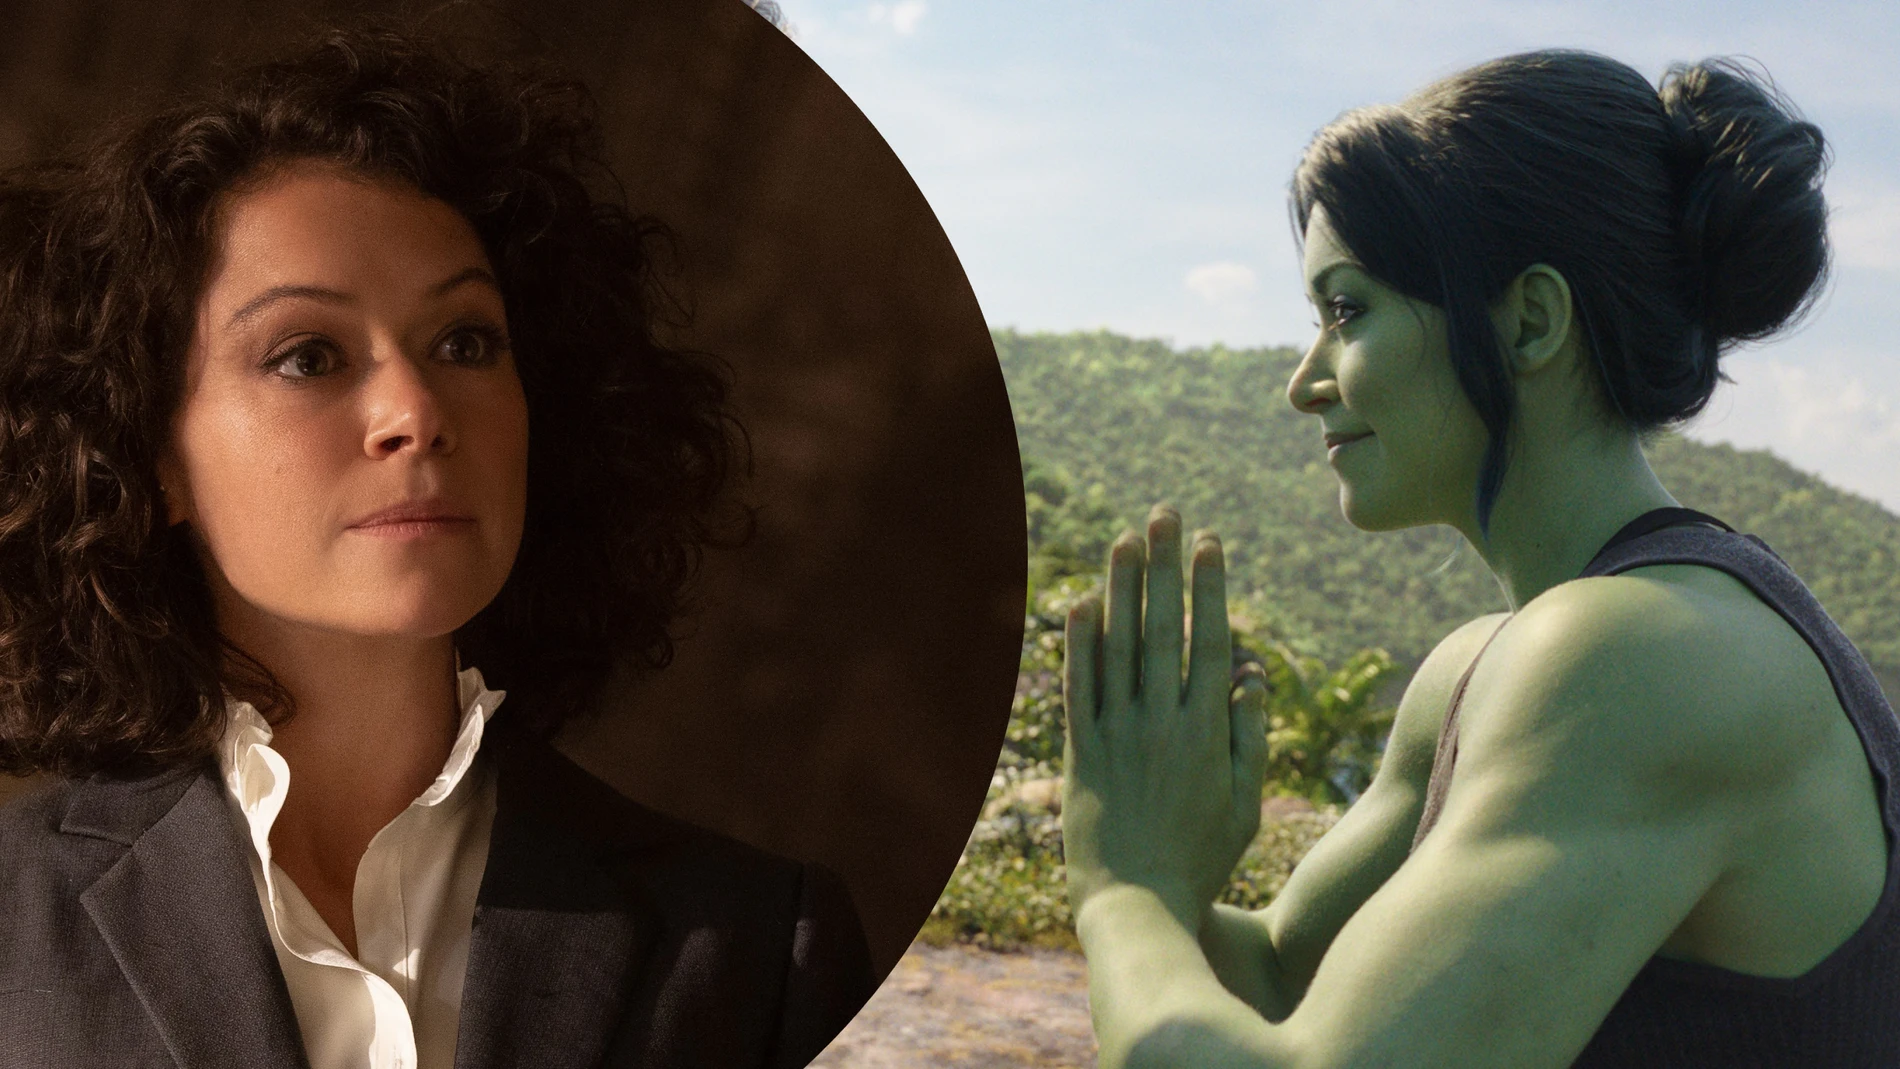 Críticas de la serie She-Hulk: Abogada Hulka , she hulk critica 